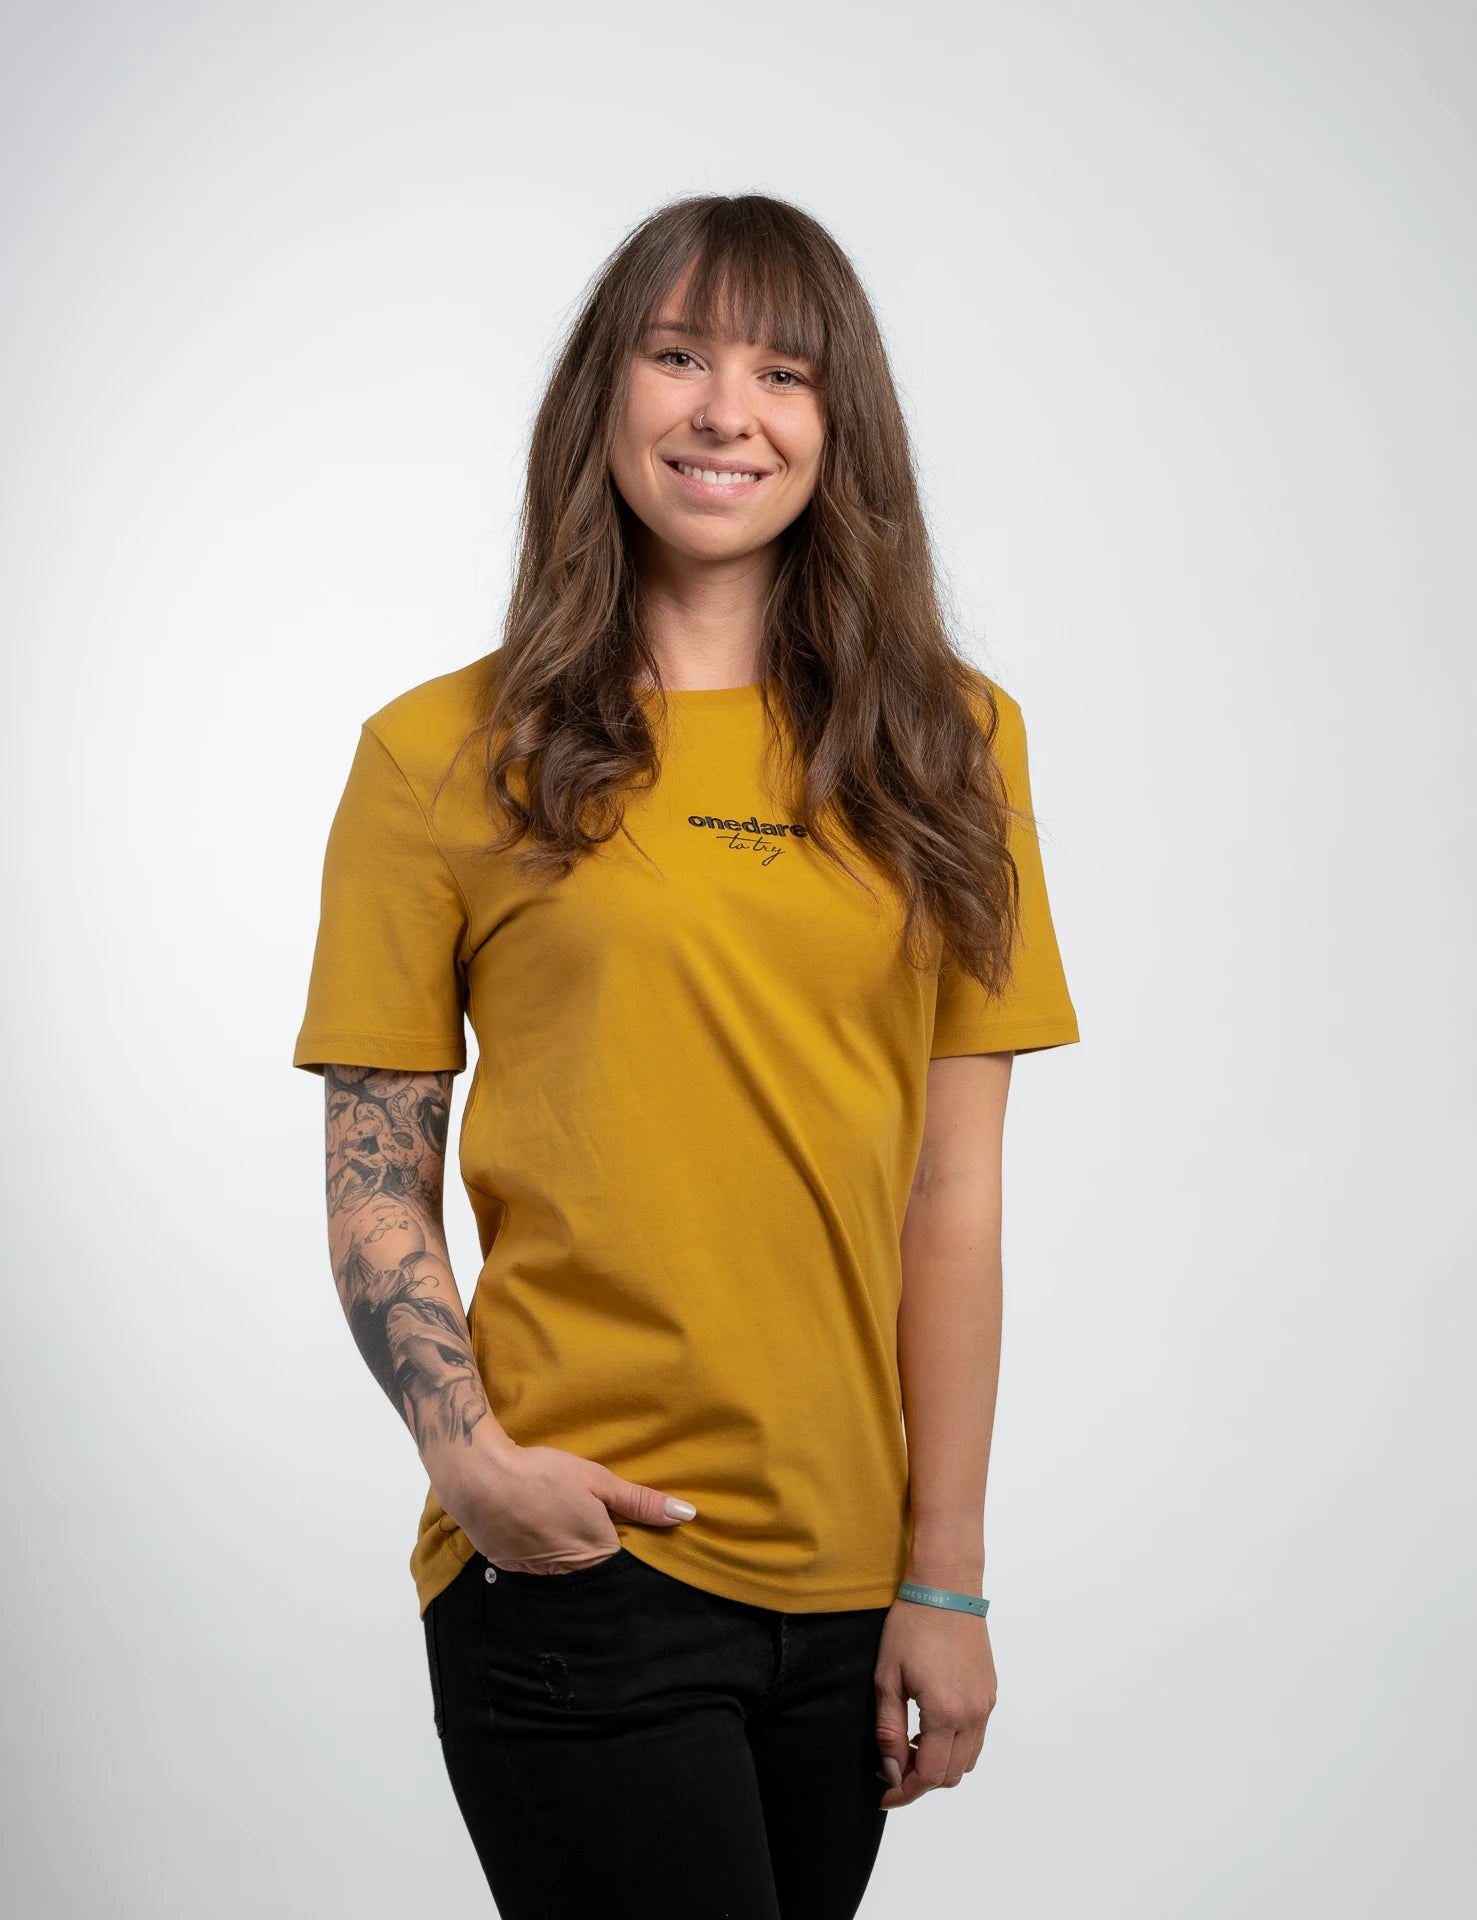 Amber classic T-Shirt aus Bio-Baumwolle mit schwarzem, onedare totry Stick mittig auf der Brust.